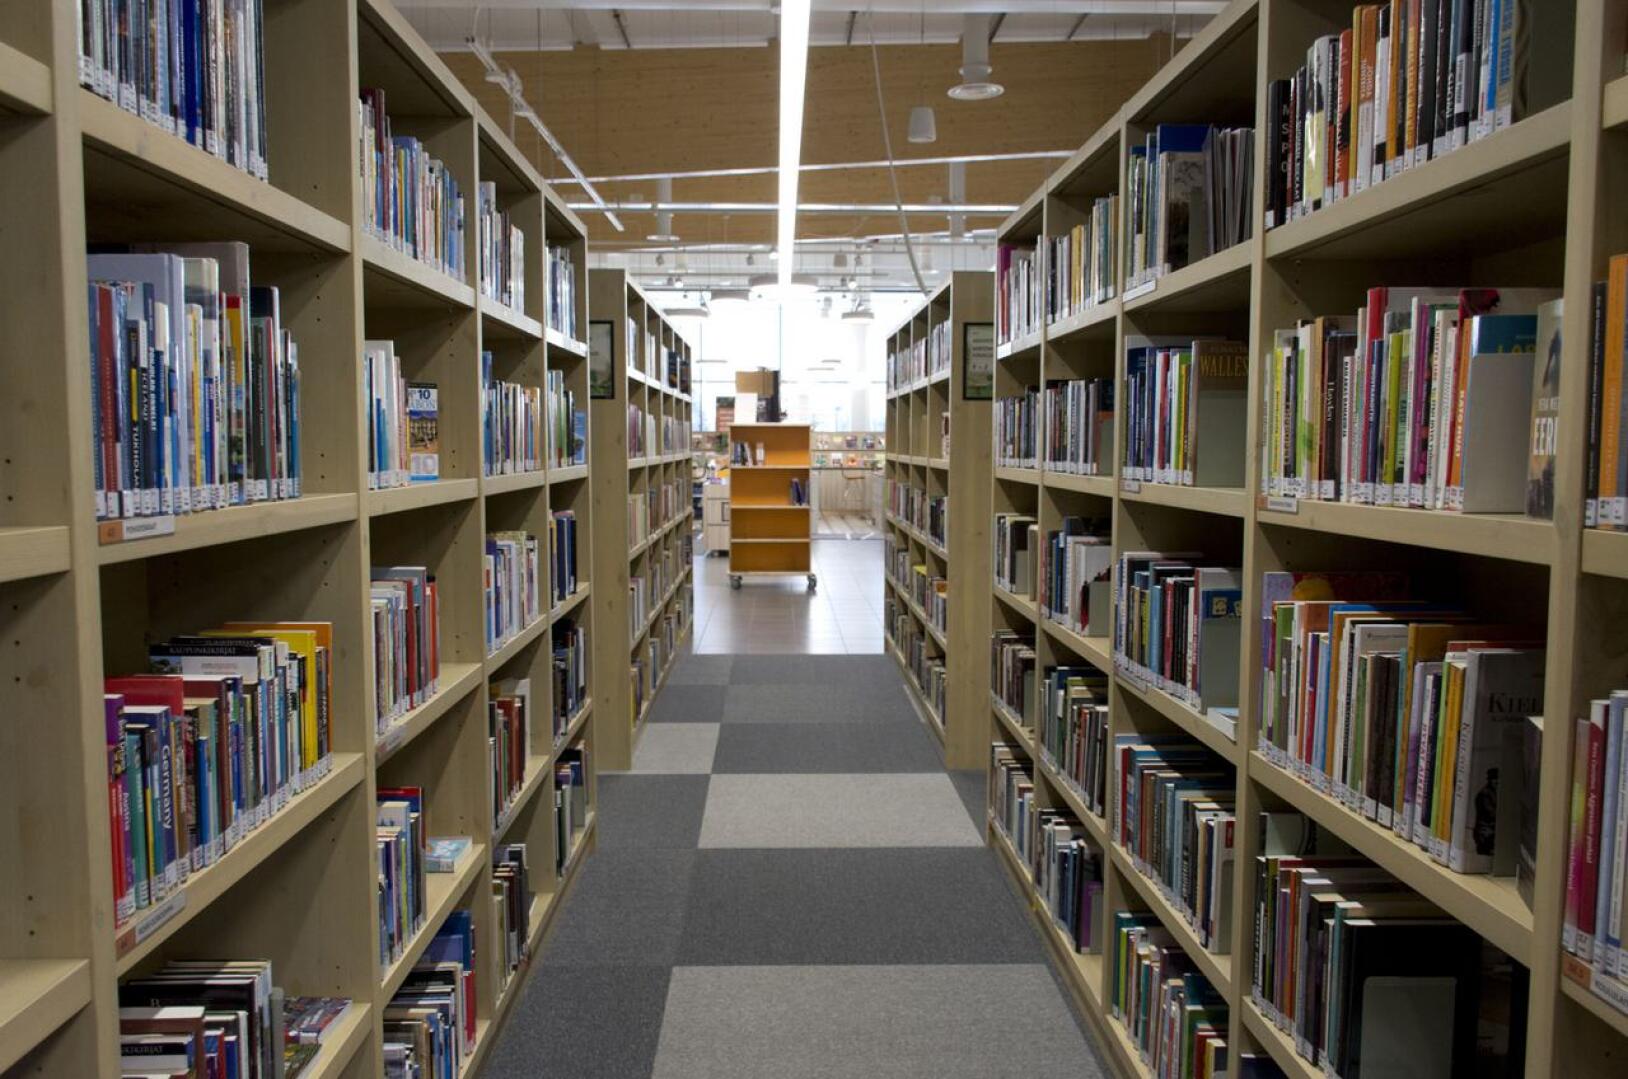 Kirjasto pystyi toisenakin koronavuonna tarjoamaan kirjastopalveluja turvallisesti ja lisäämään hyvinvointia ja vapaa-ajan mahdollisuuksia.